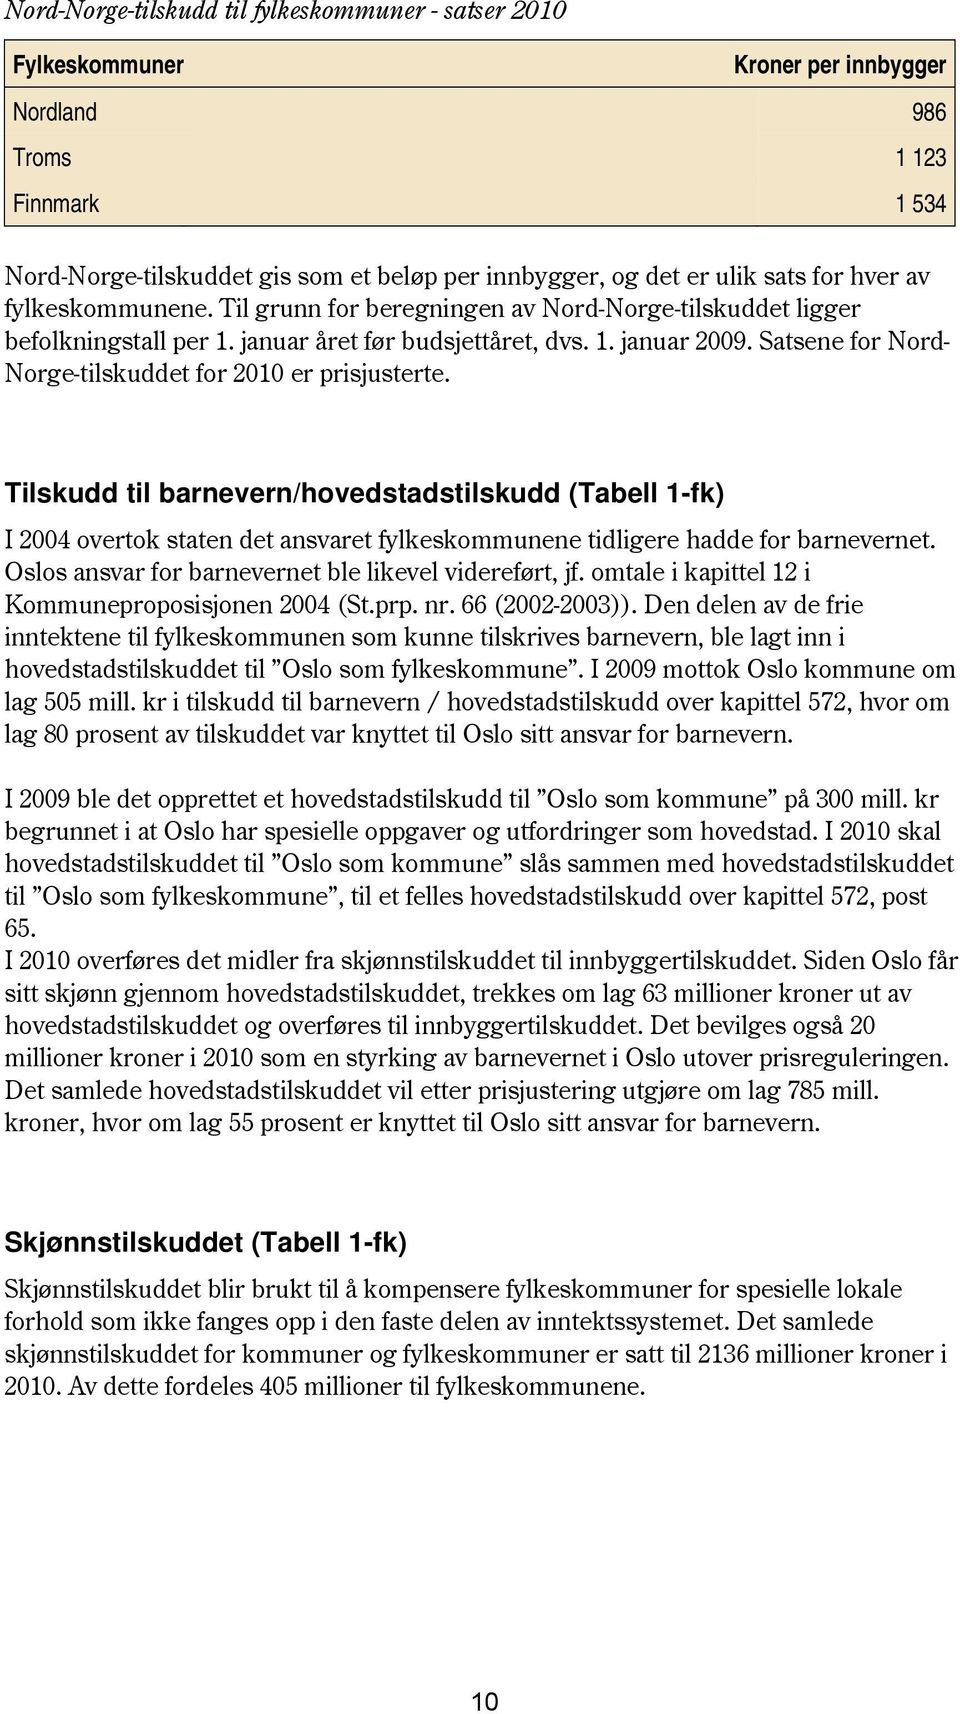 Satsene for Nord- Norge-tilskuddet for 2 er prisjusterte. Tilskudd til barnevern/hovedstadstilskudd (Tabell -fk) I 2 overtok staten det ansvaret fylkeskommunene tidligere hadde for barnevernet.